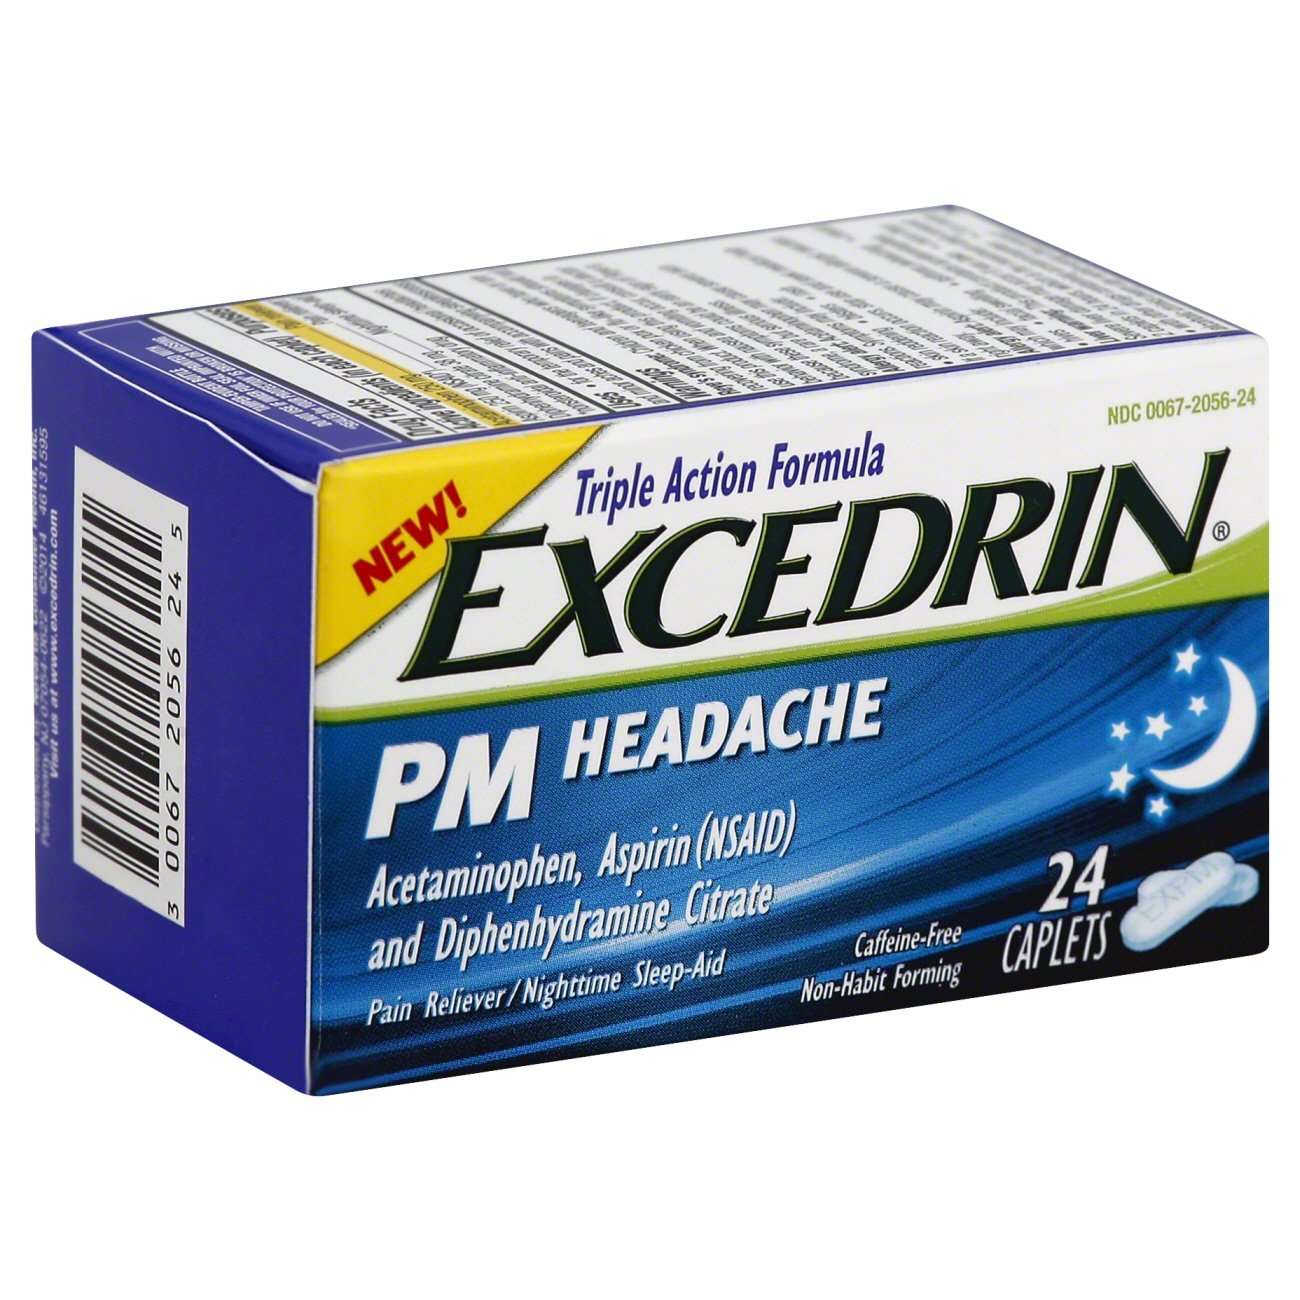 Excedrin PM Headache Triple Action Formula